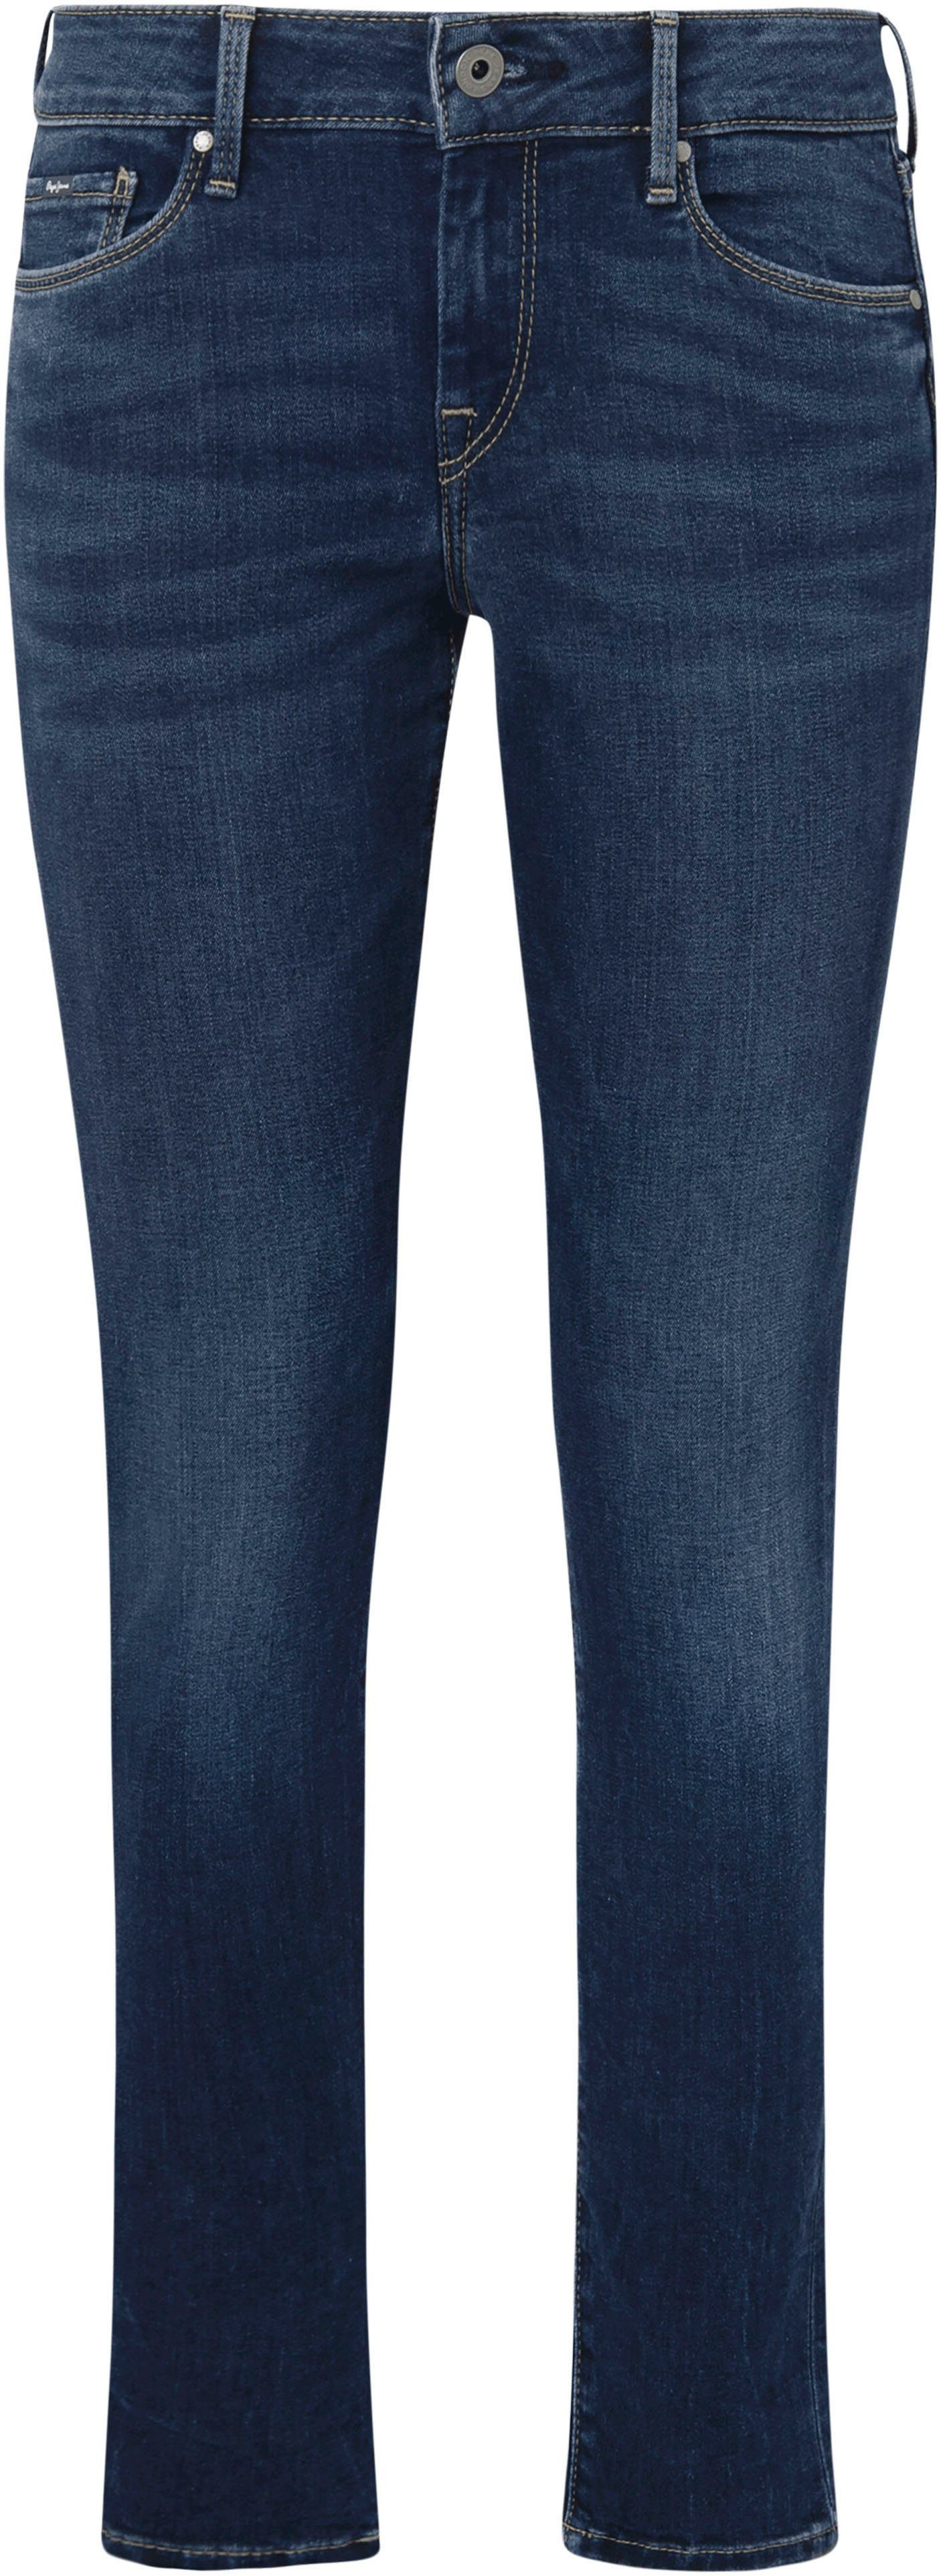 Pepe Jeans Skinny-fit-Jeans used mit und Bund worn im Stretch-Anteil dark 5-Pocket-Stil 1-Knopf SOHO